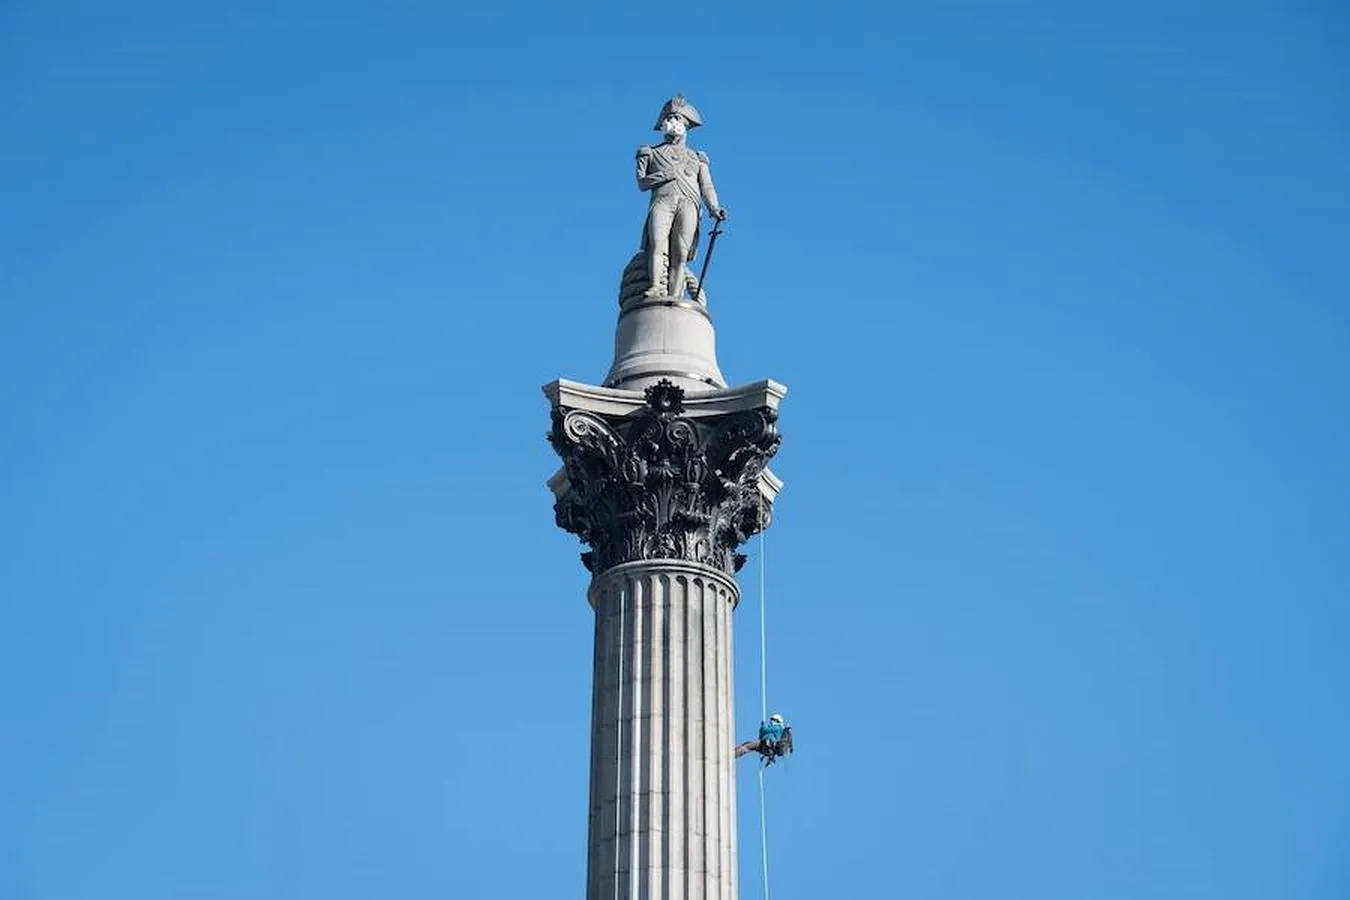 Miembros de Greenpeace ponen una mascarilla en lo alto de la columna del almirante Nelson, en Trafalgar Square. 